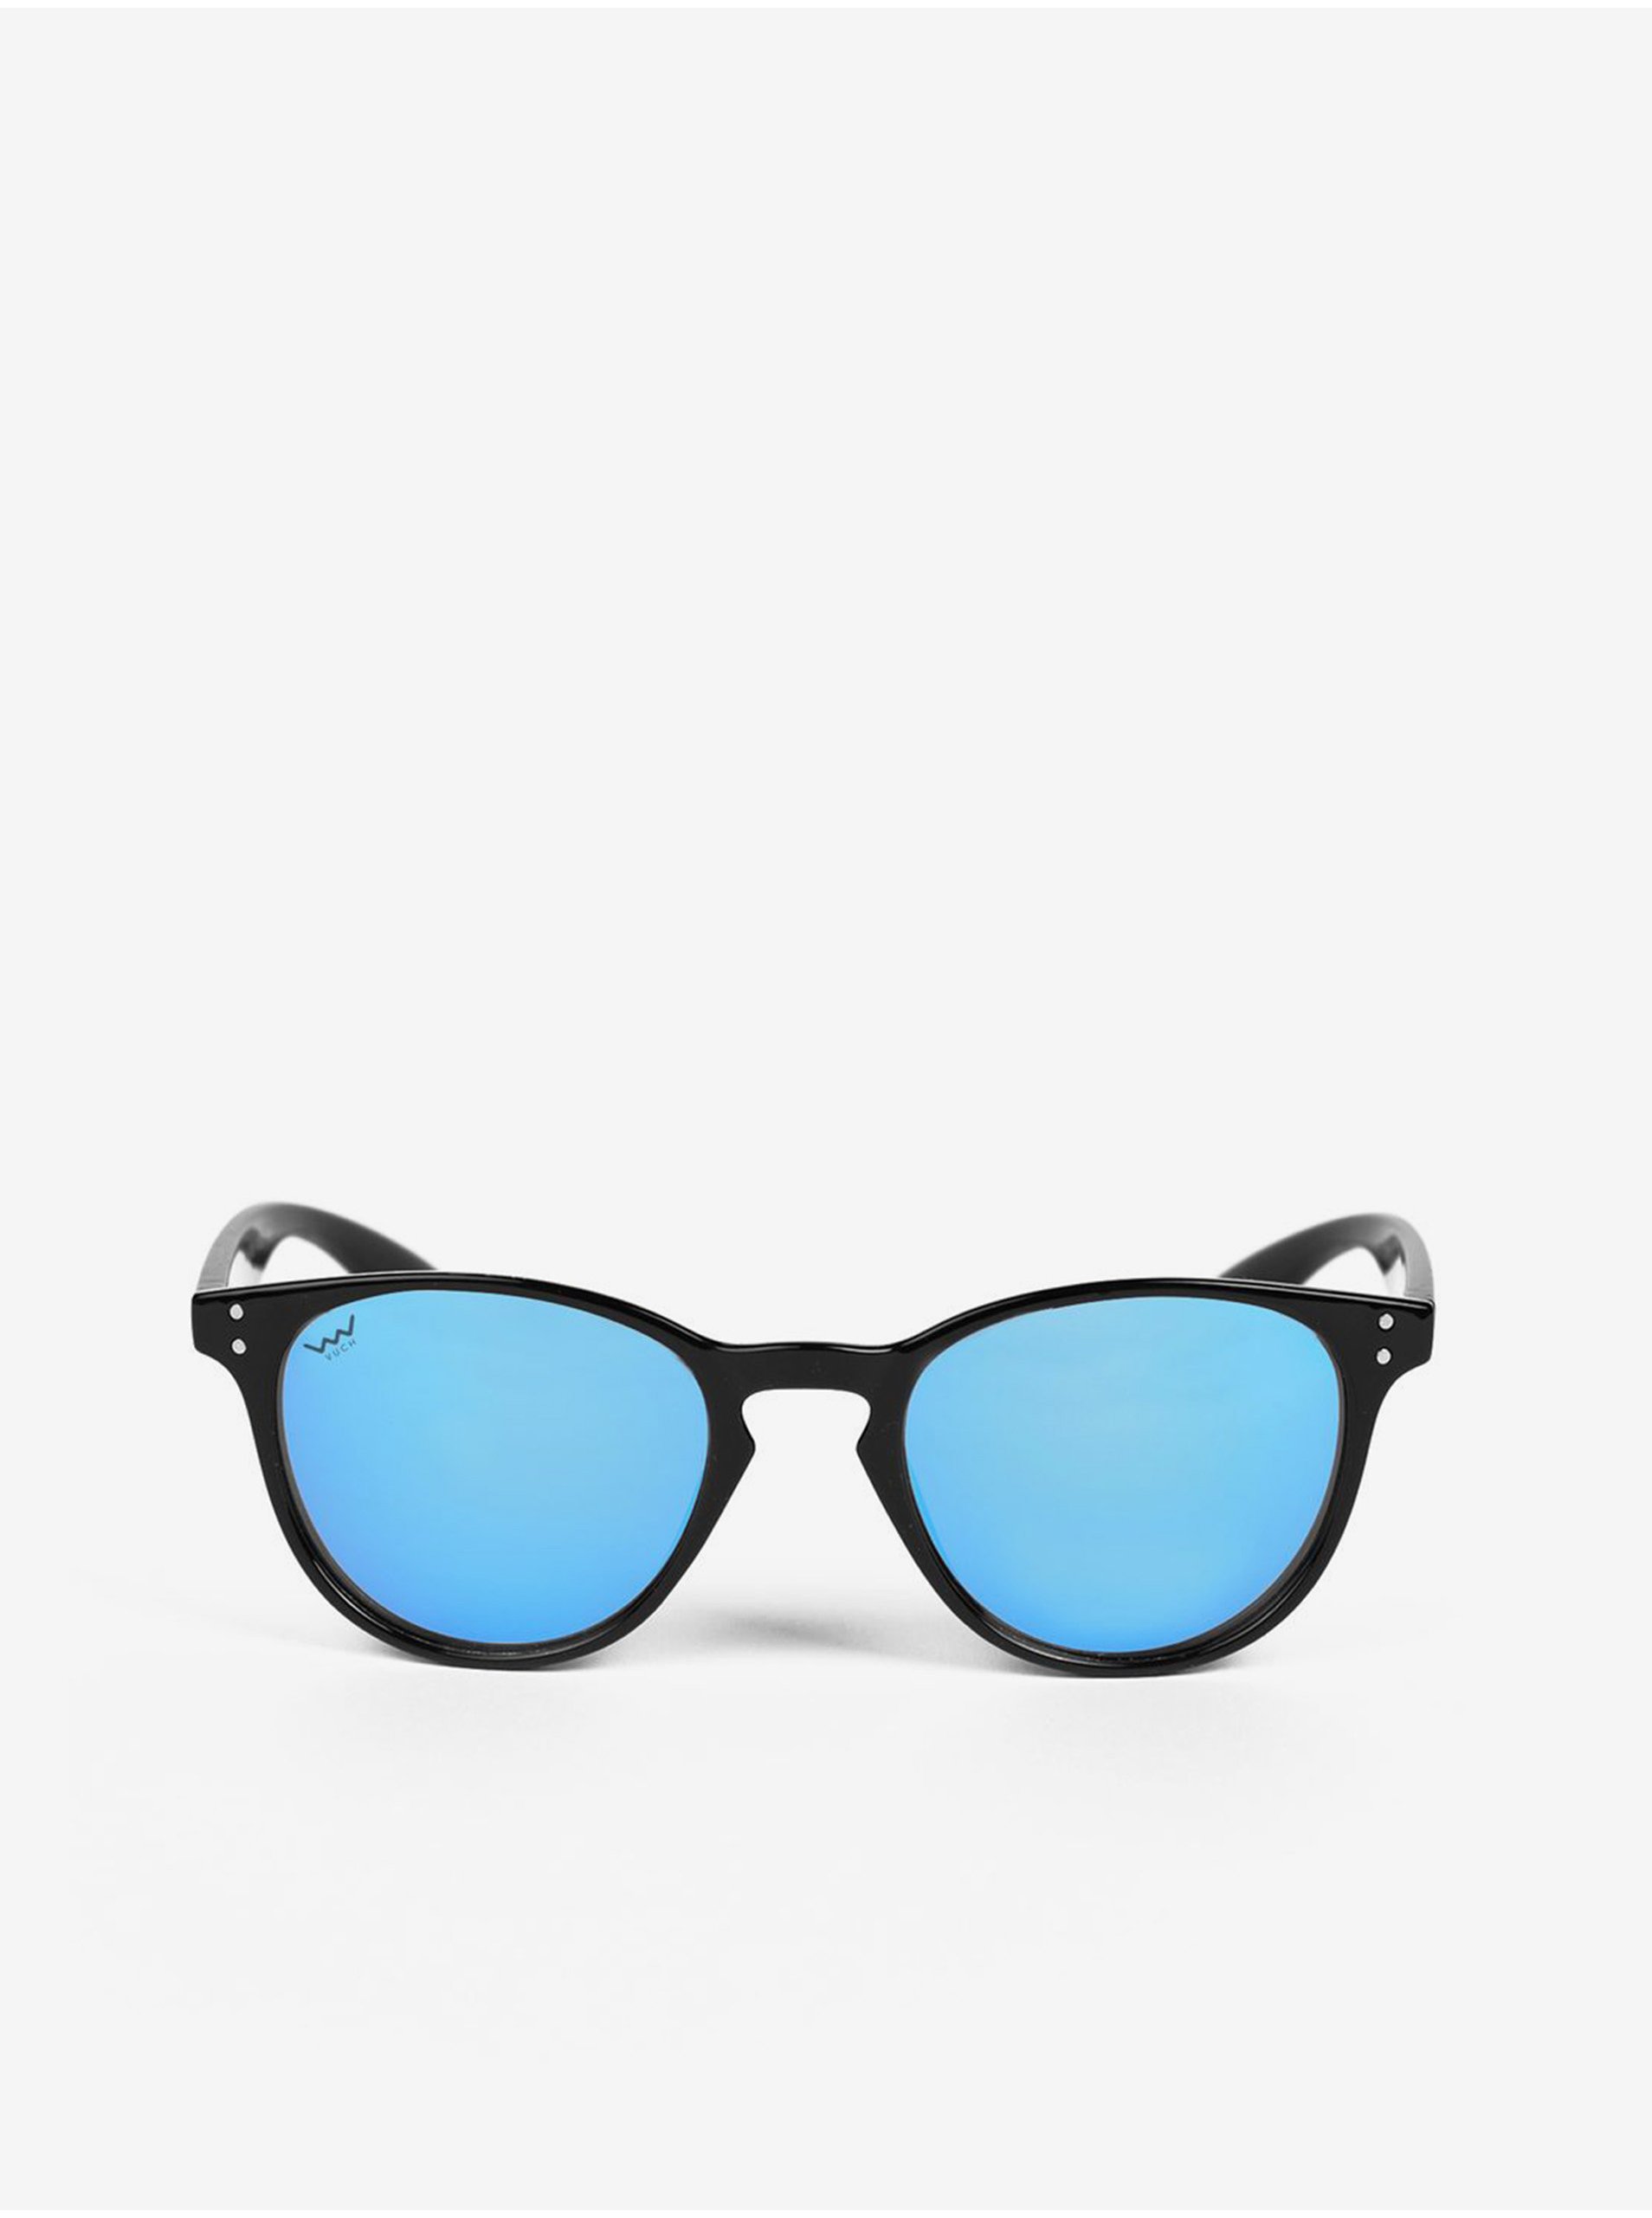 E-shop Černé dámské sluneční brýle VUCH Shelby